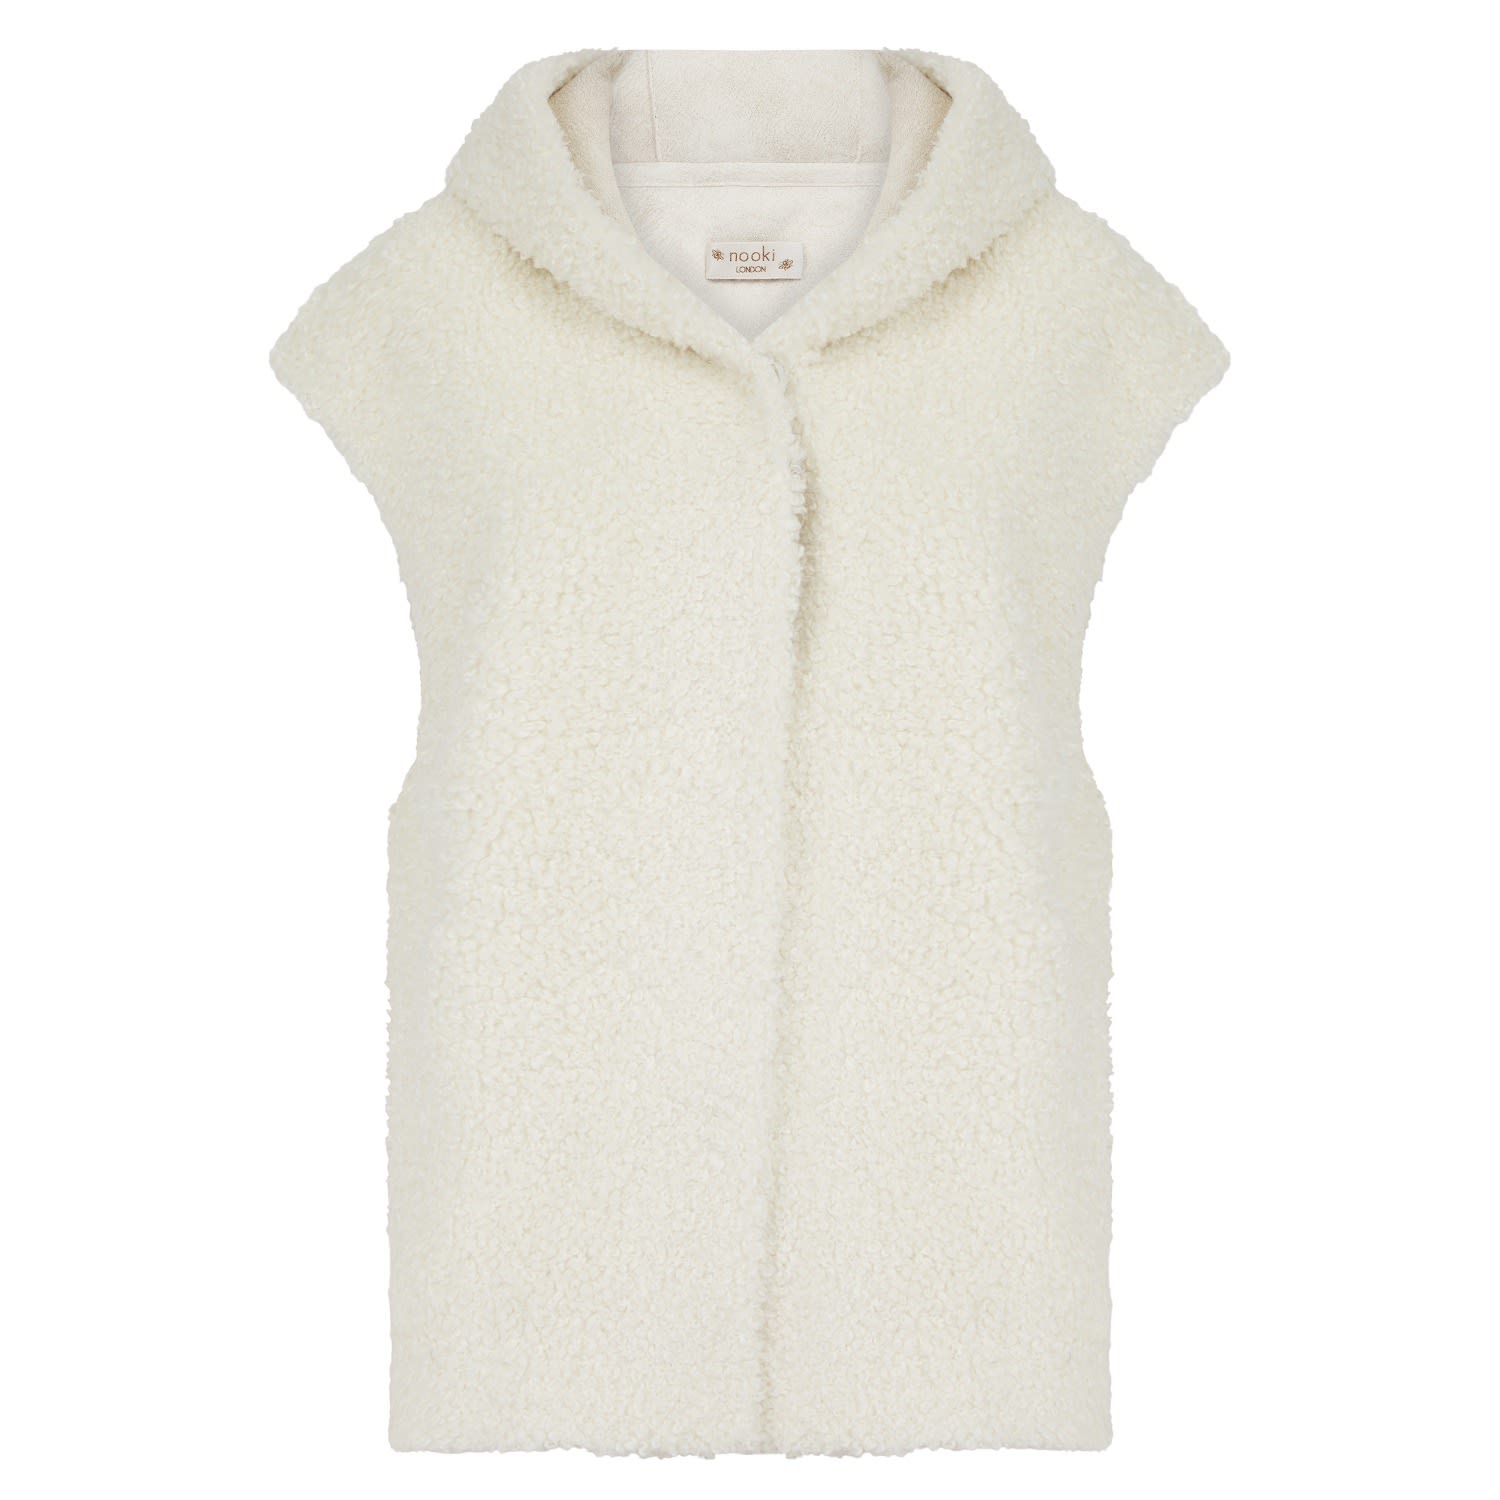 Women’s White Willoughby Faux Fur Gilet - Cream M/L Nooki Design